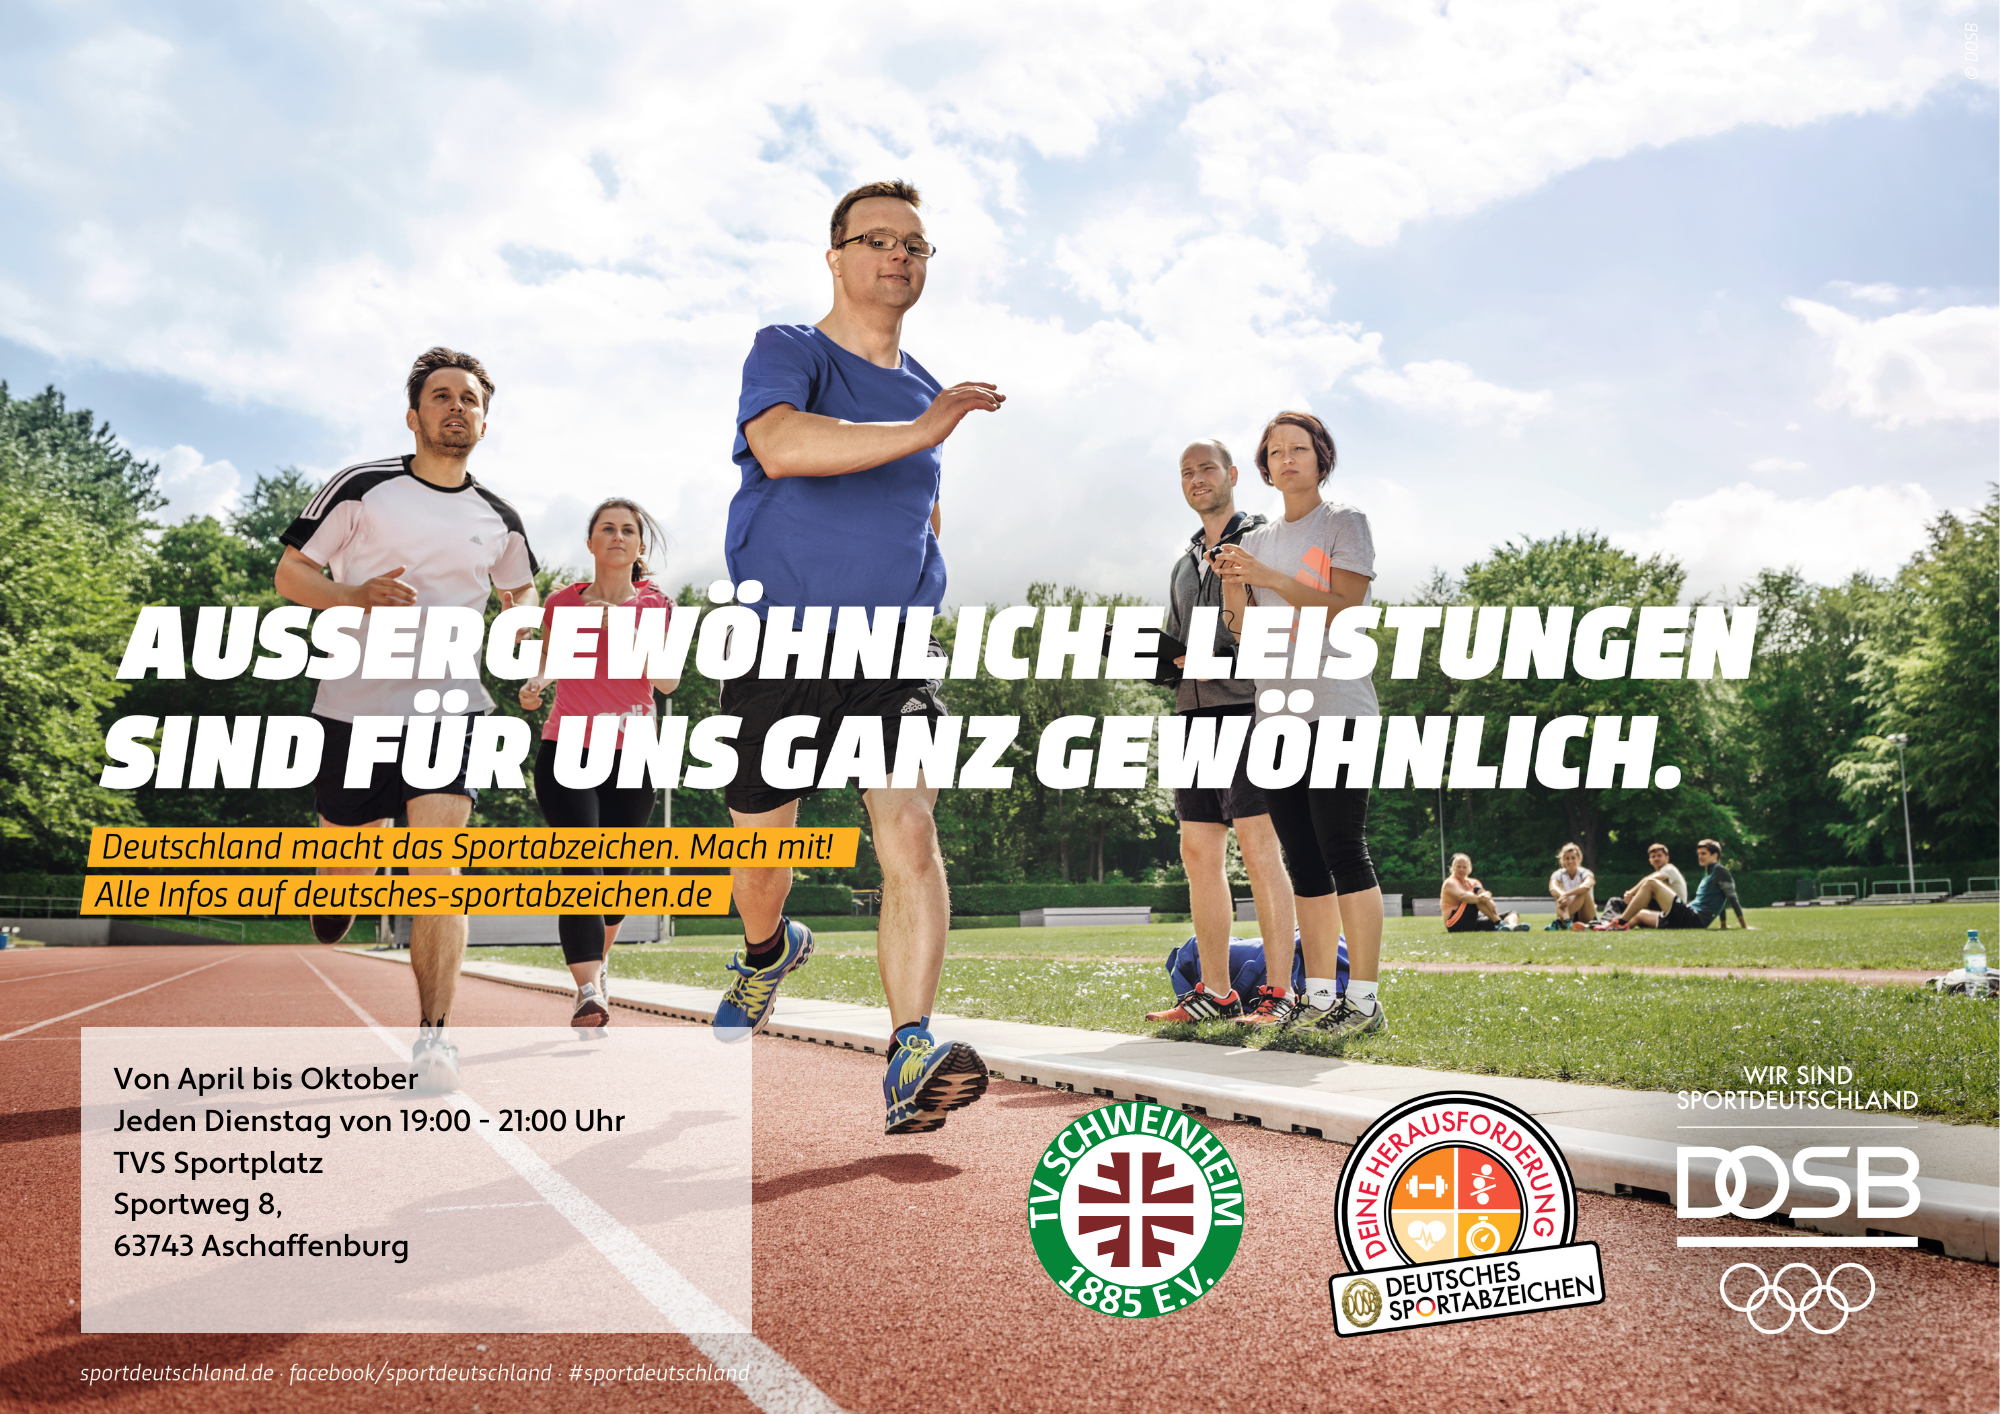 SD-Motiv · Deutsches Sportabzeichen · Laufen, Inklusion